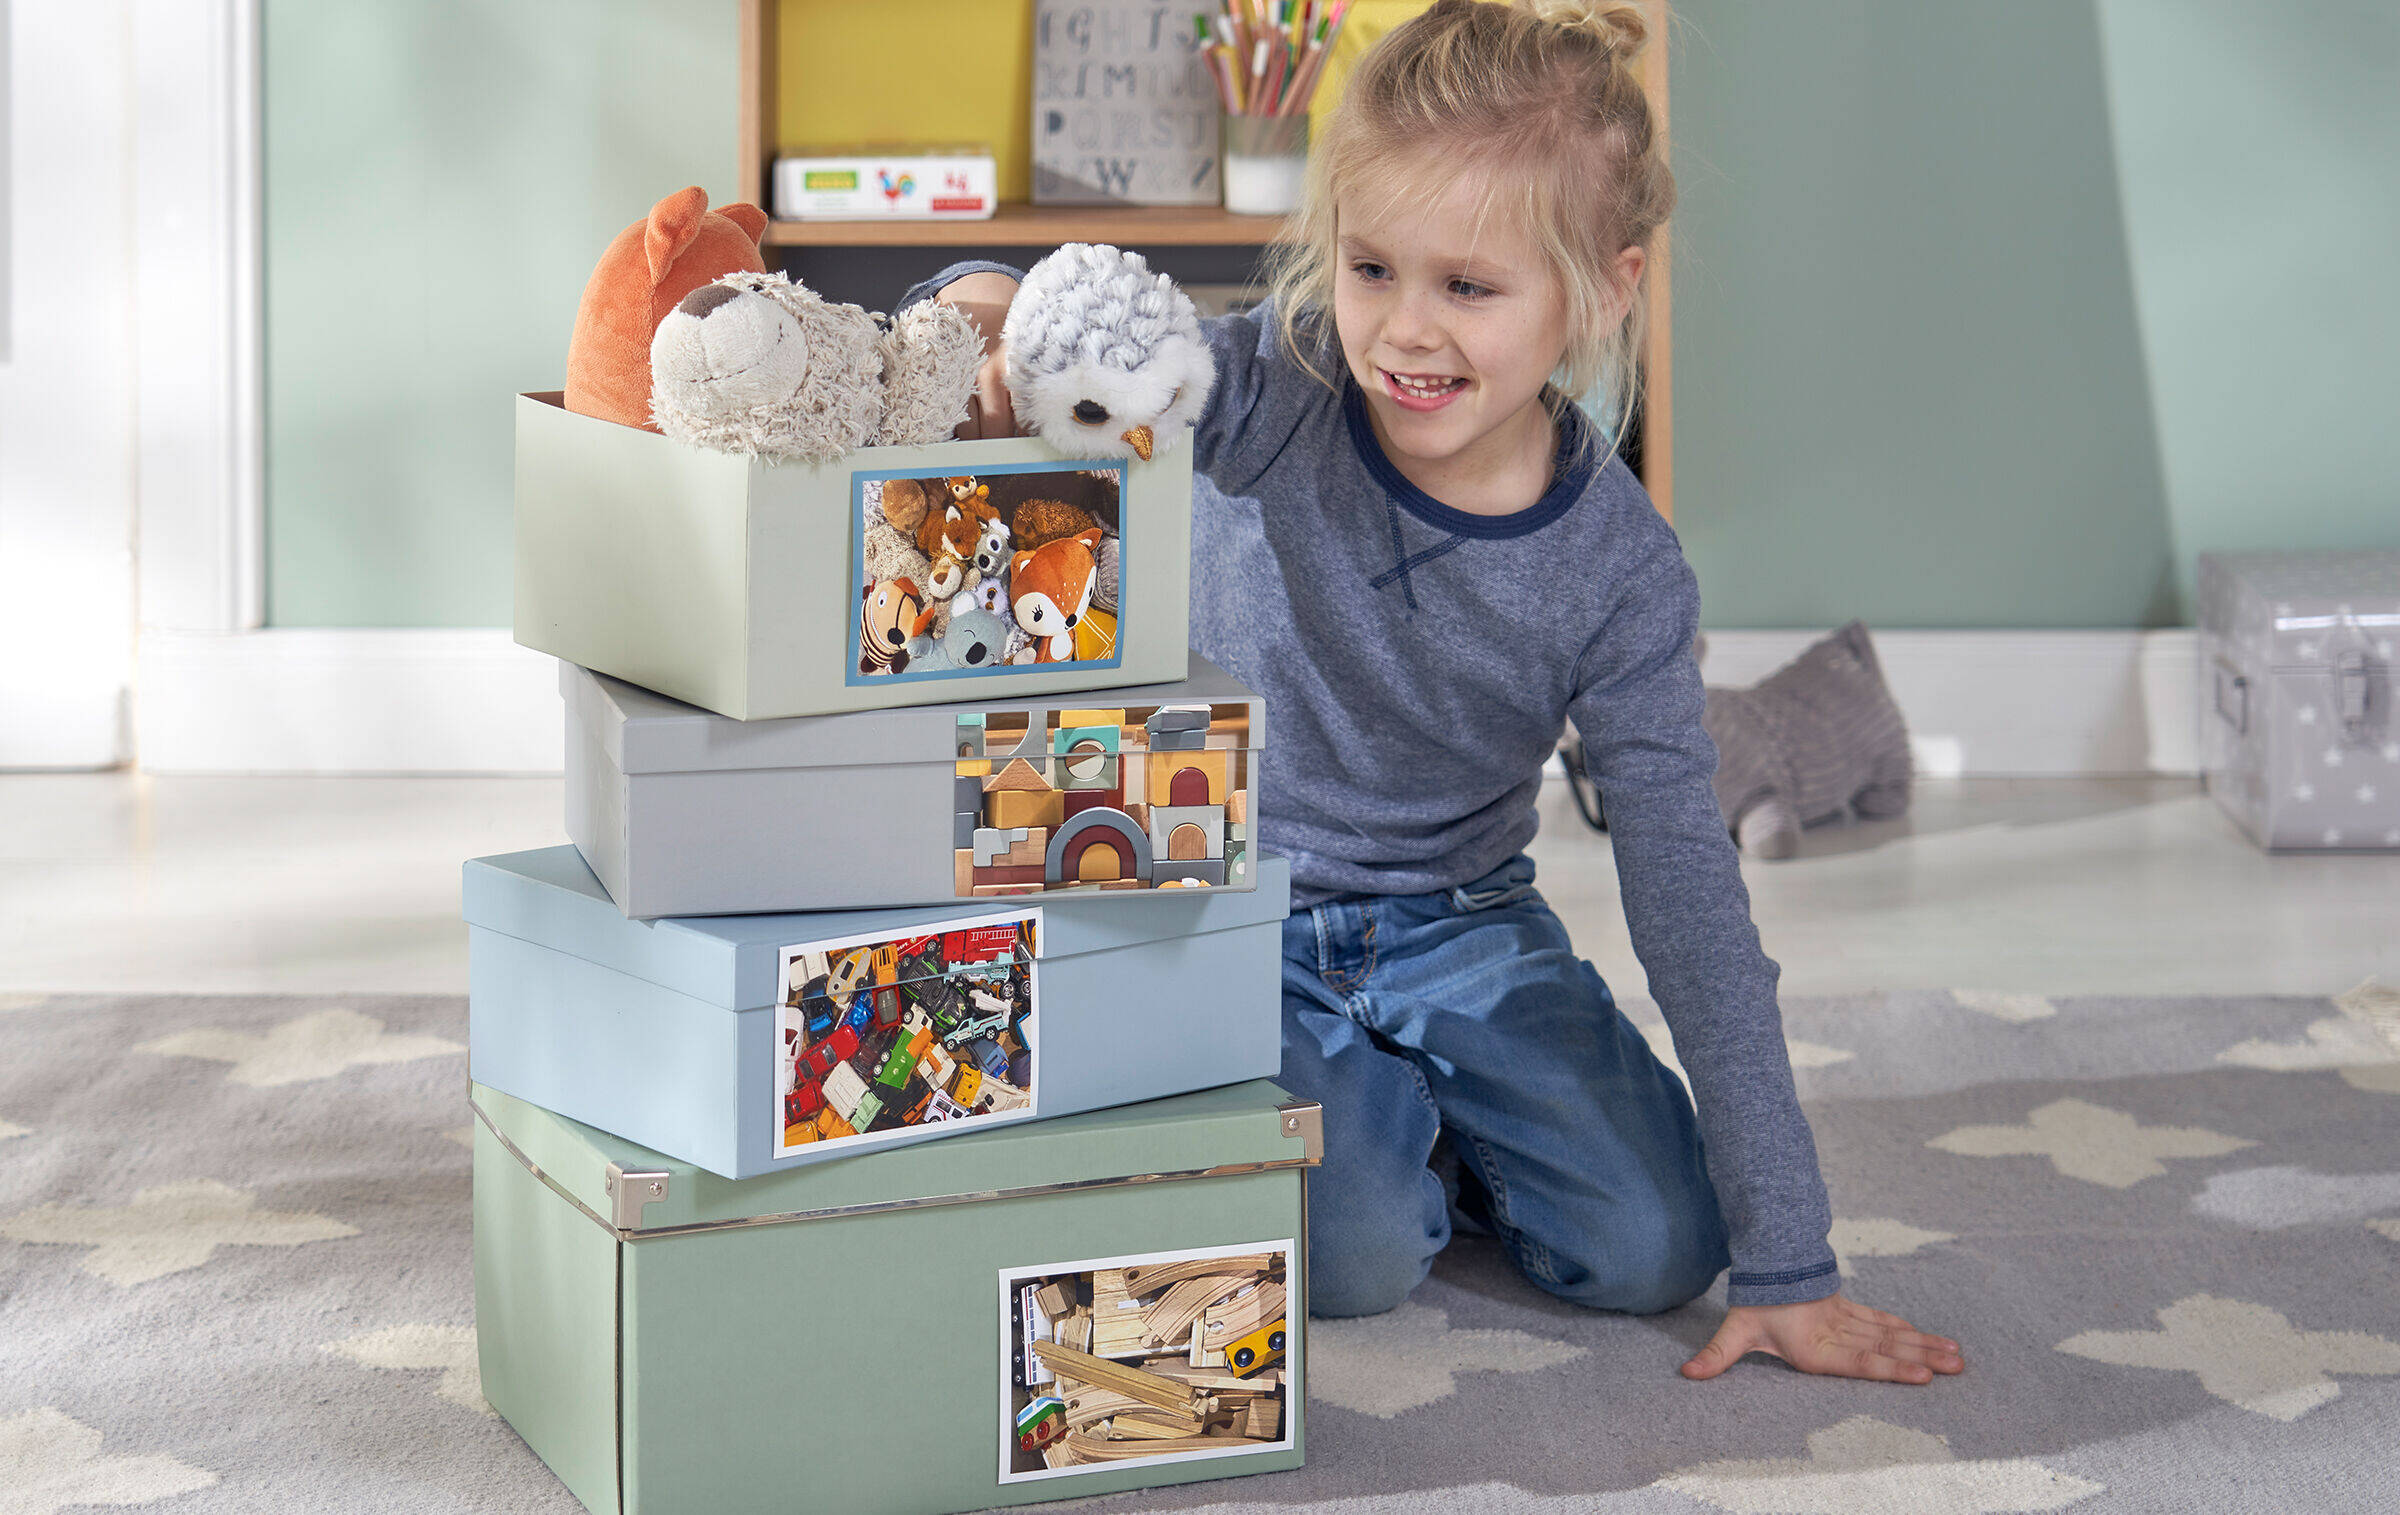 Kind kniet neben vier übereinandergestapelten Boxen. Darauf sind Fotos vom jeweiligen Inhalt der Boxen zu sehen, zum Beispiel Spielzeug oder Stofftiere.